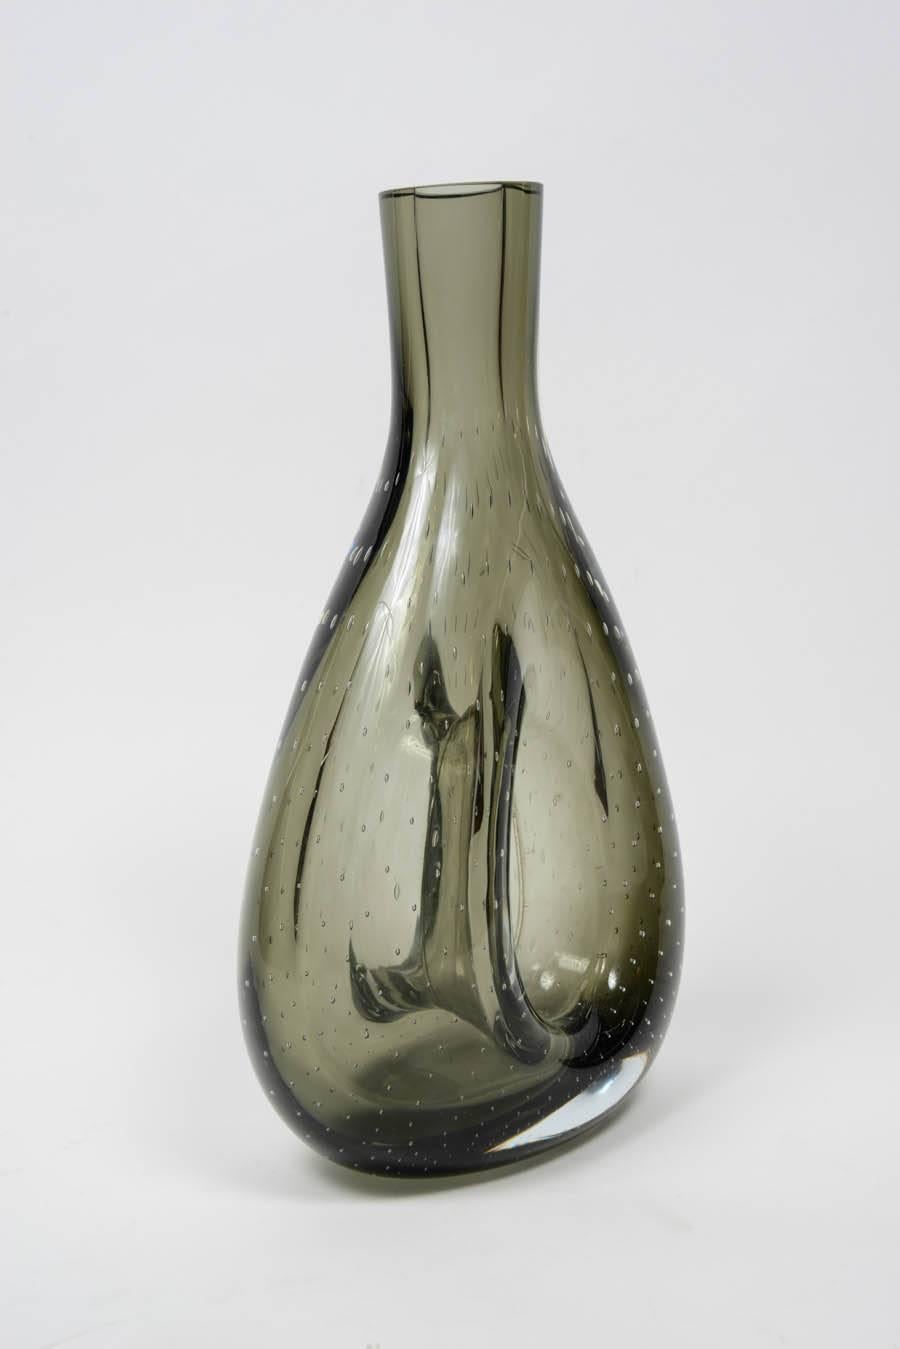 Italian Pair of Smoked Murano Glass Vases Attributed to Venini